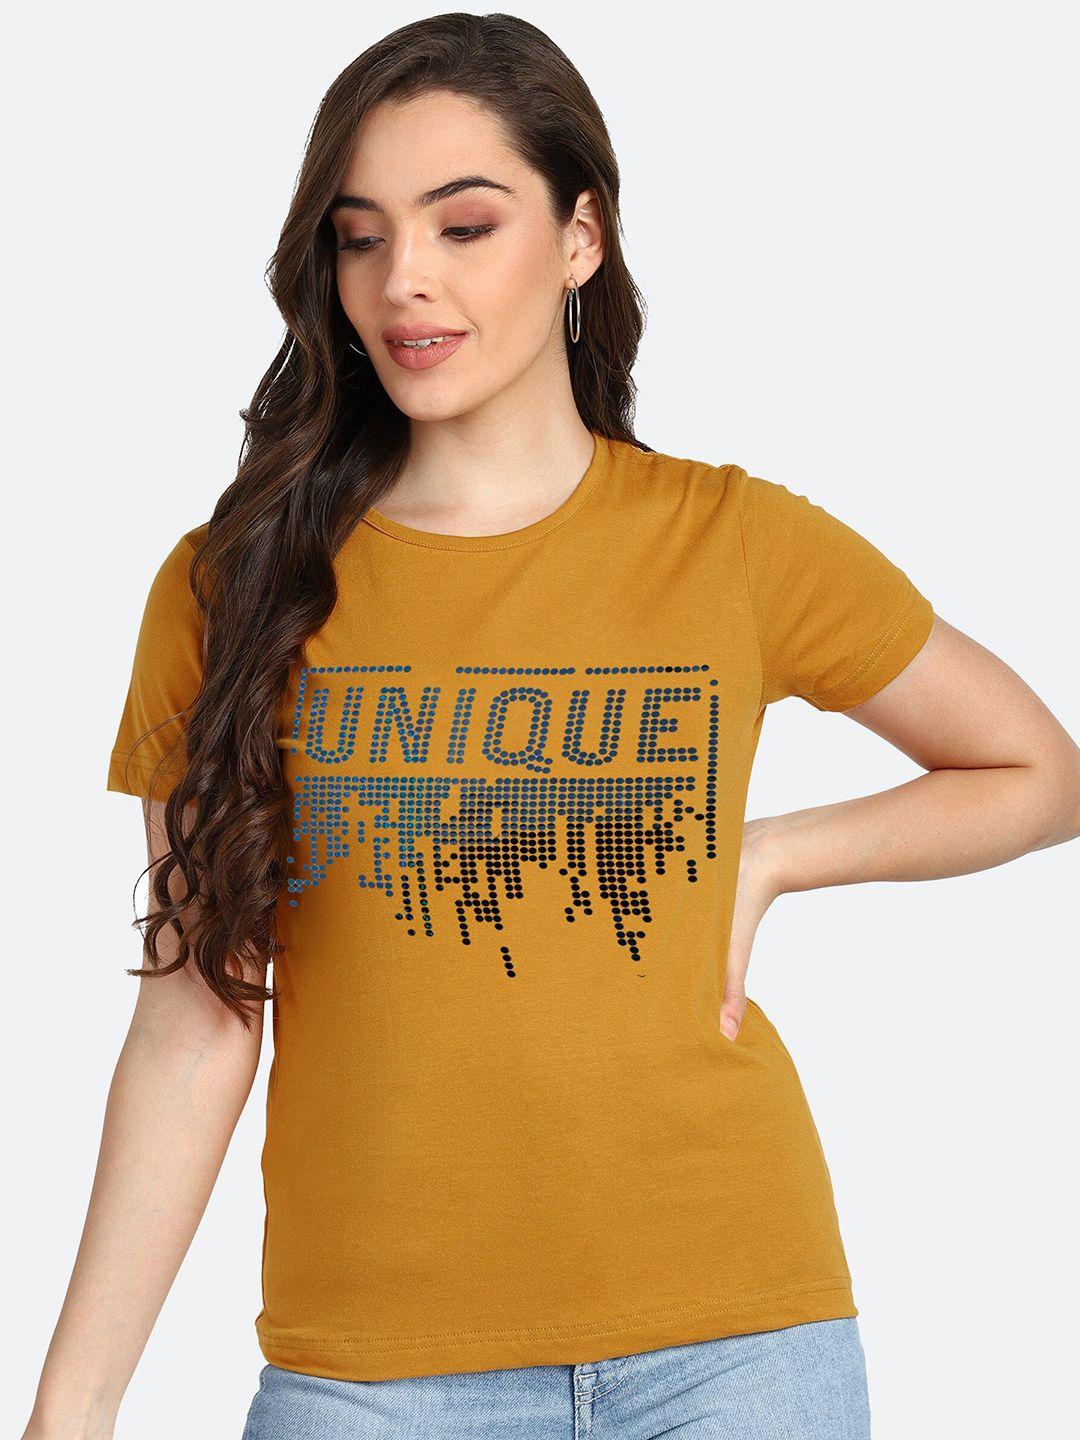 shashvi women mustard yellow typography printedt-shirt